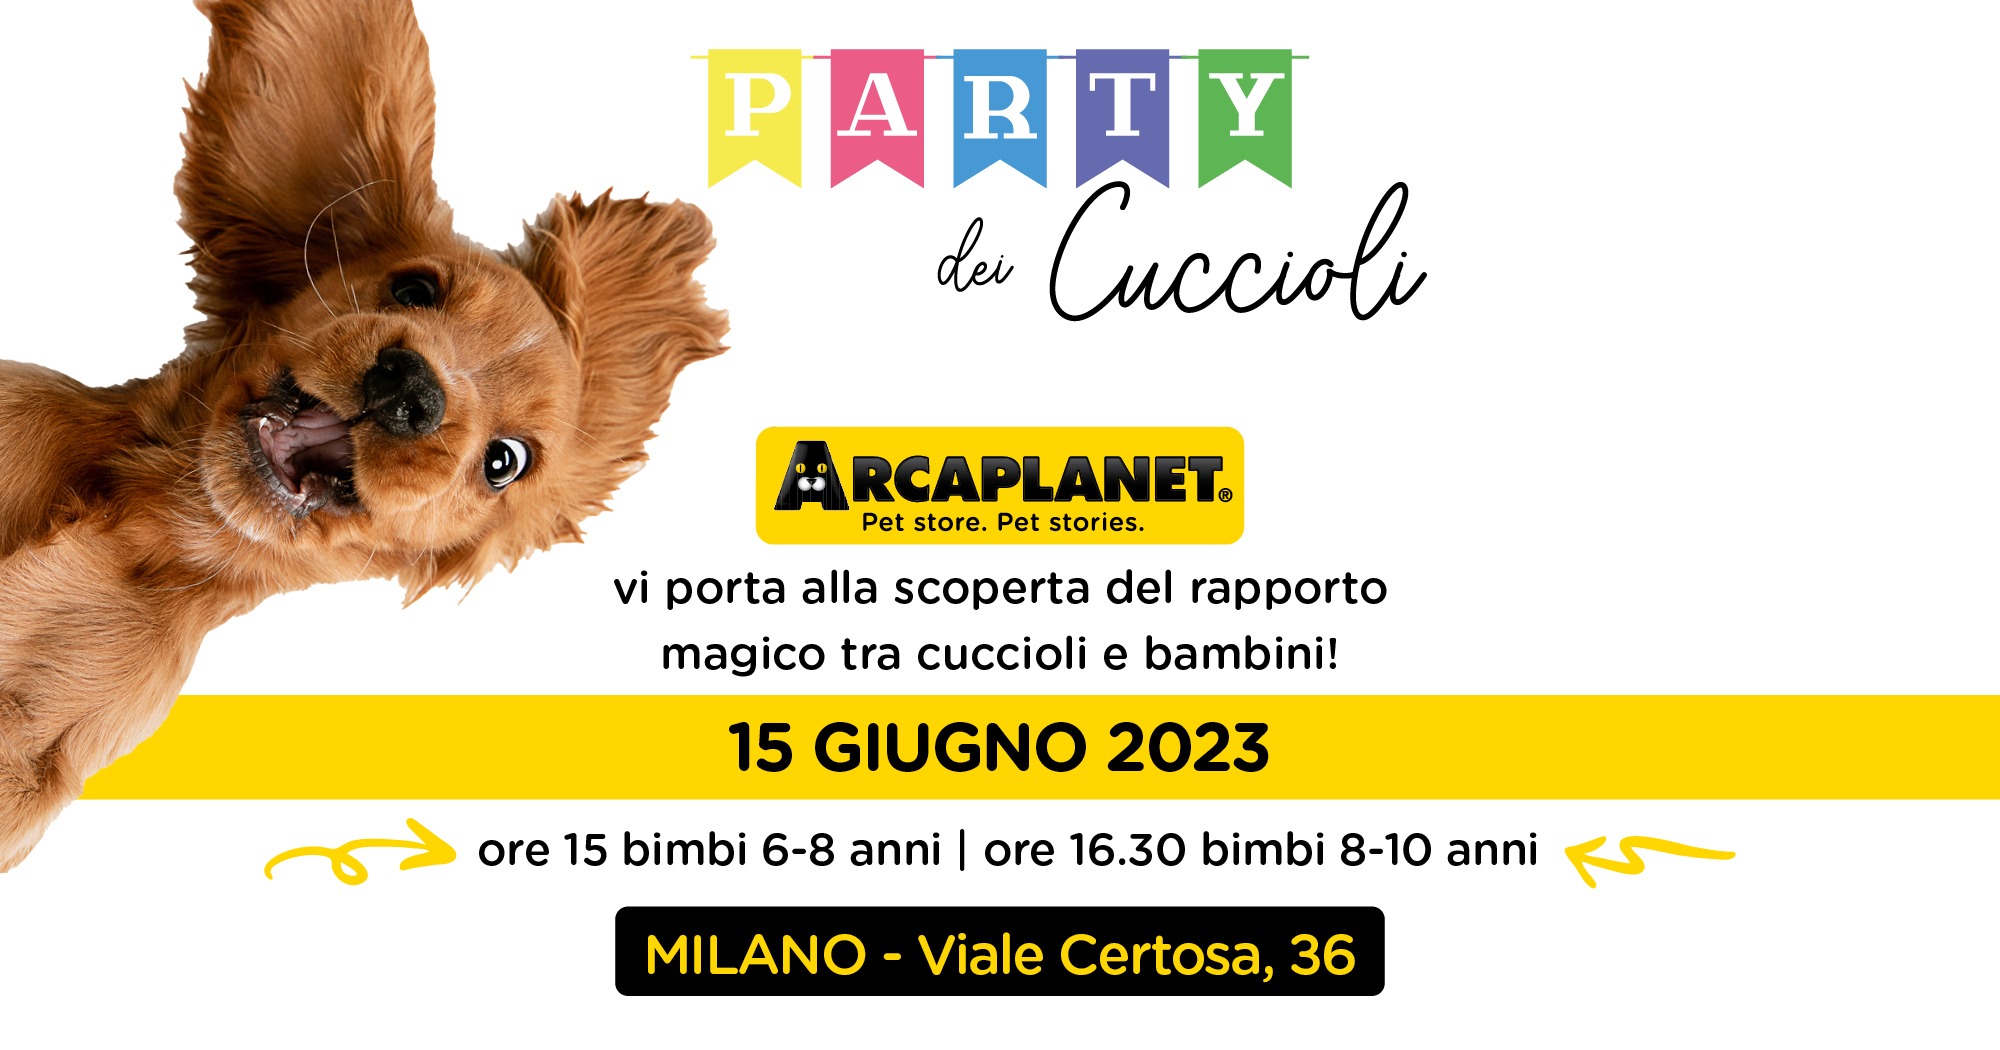 Party dei Cuccioli by Arcaplanet a Milano